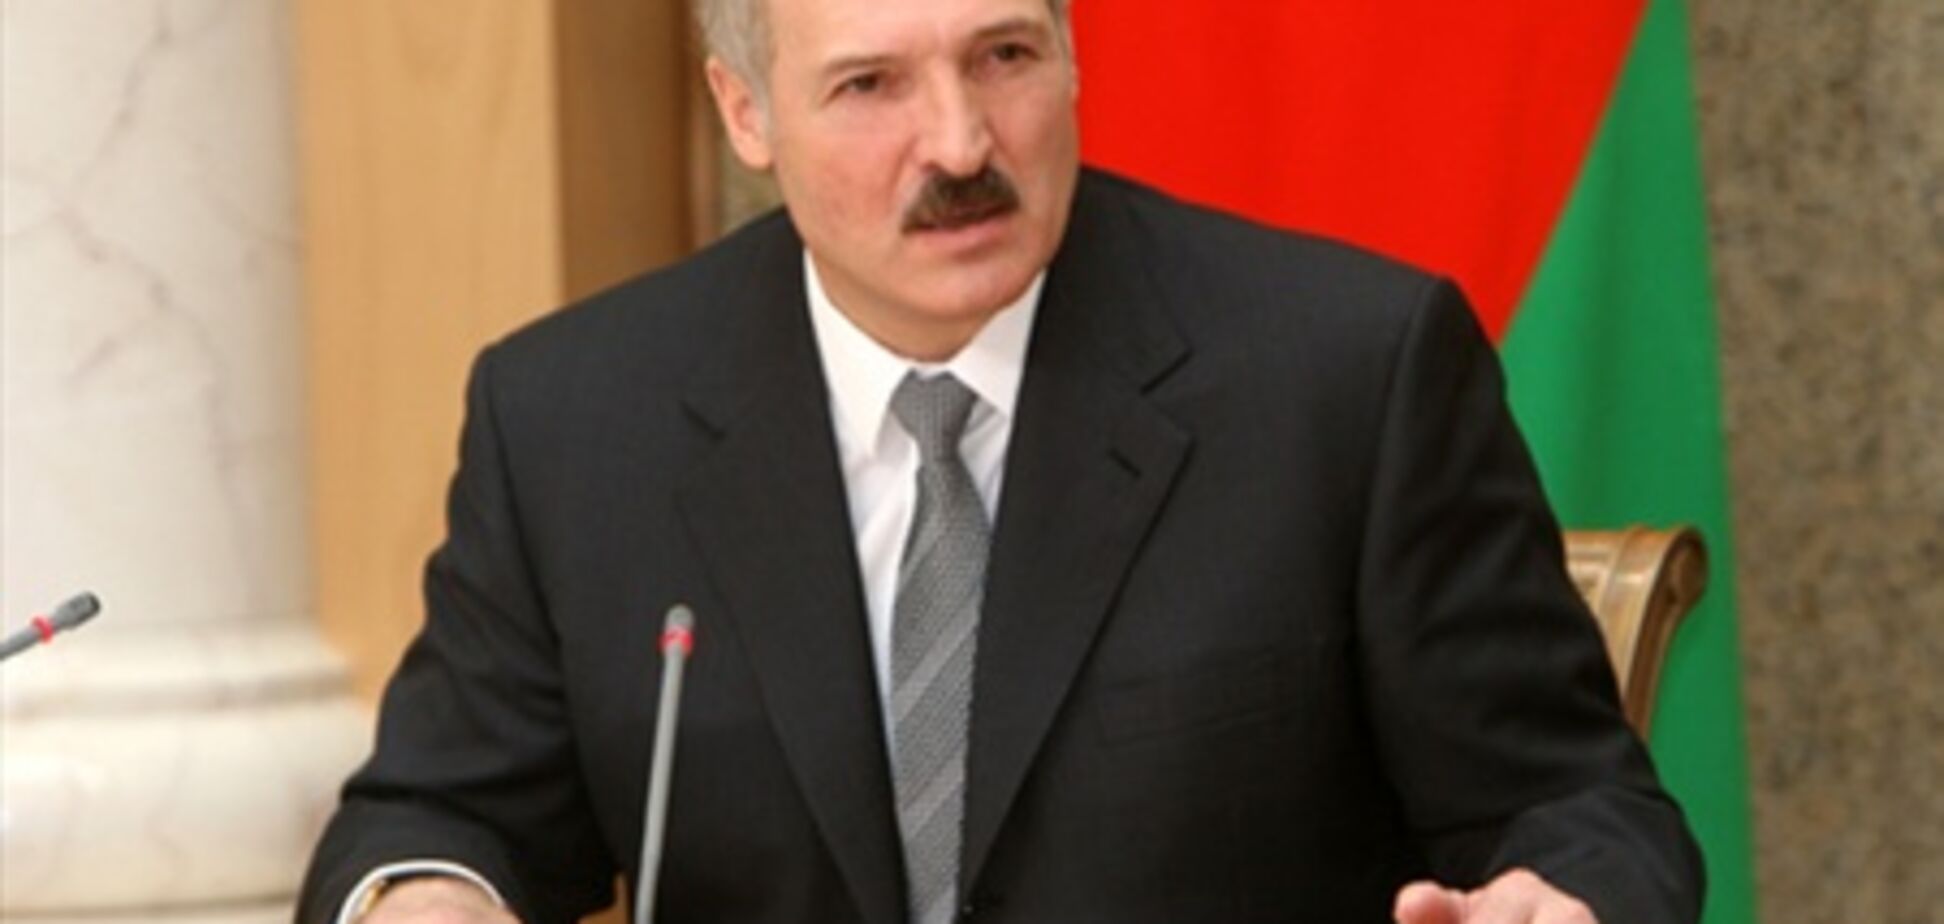 Евросоюз разрабатывает новые санкции против Лукашенко